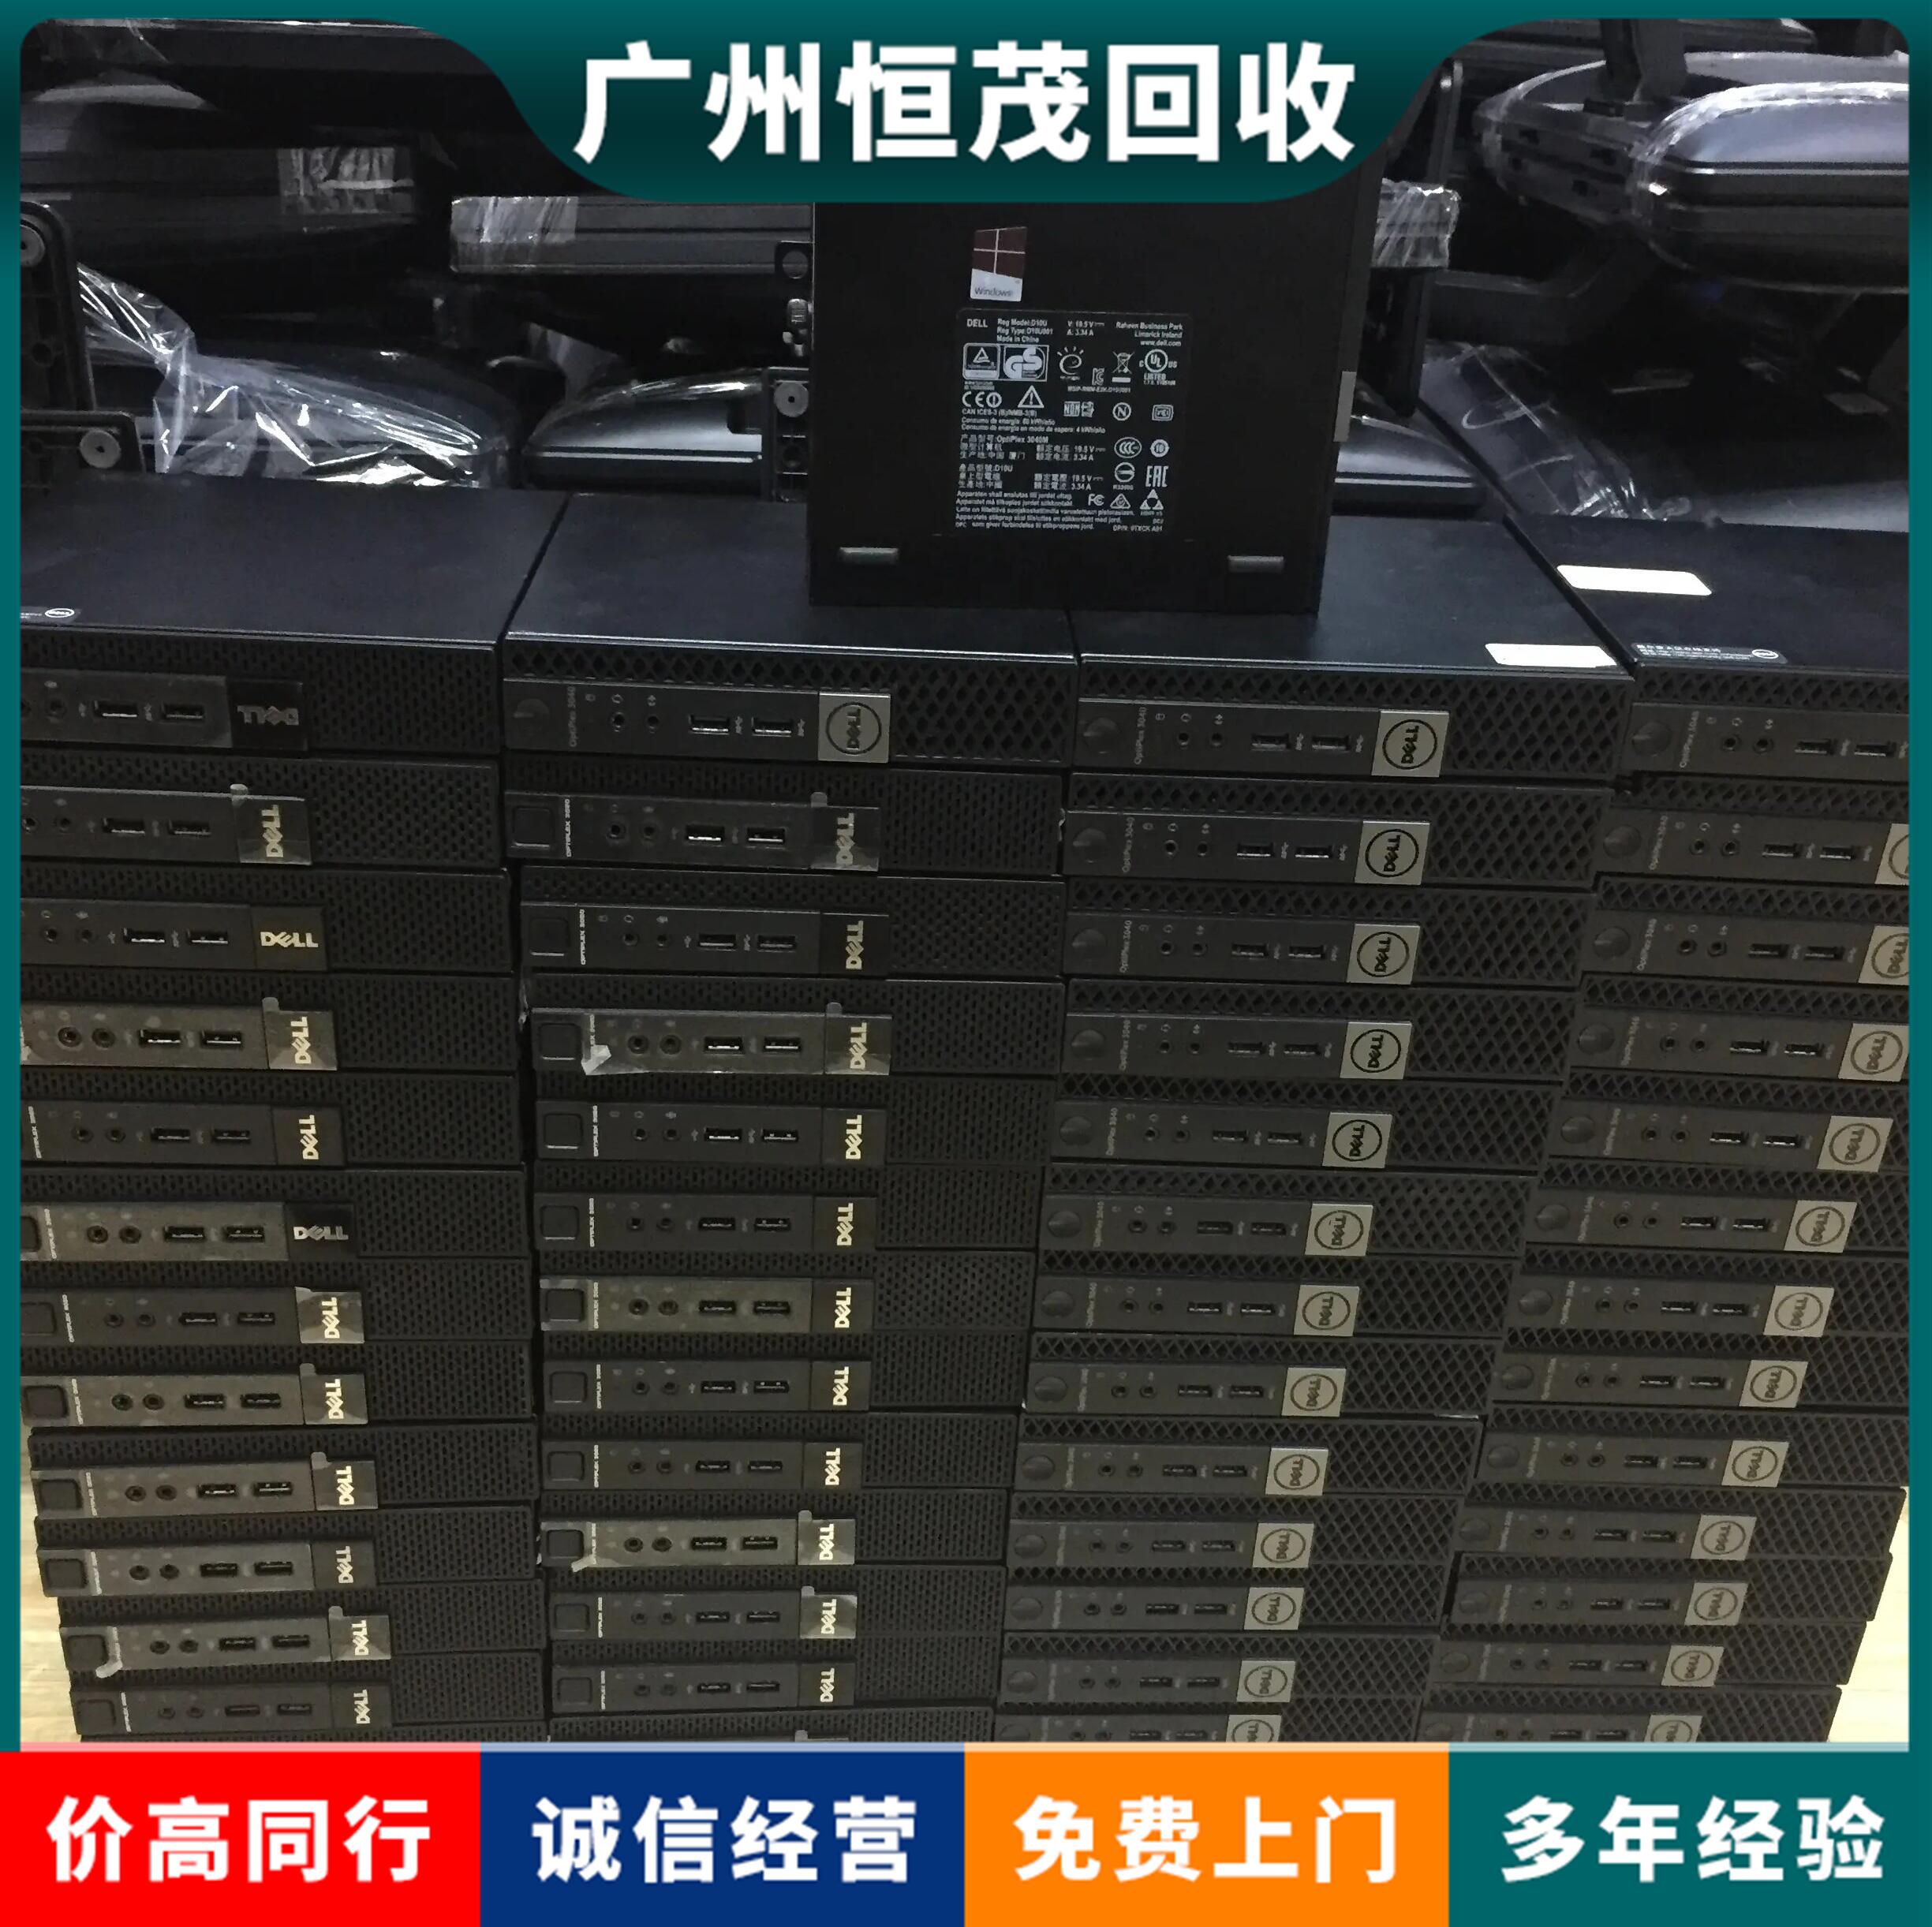 广州科学城大量旧电脑回收报价,单机多用户系统,宏基电脑回收